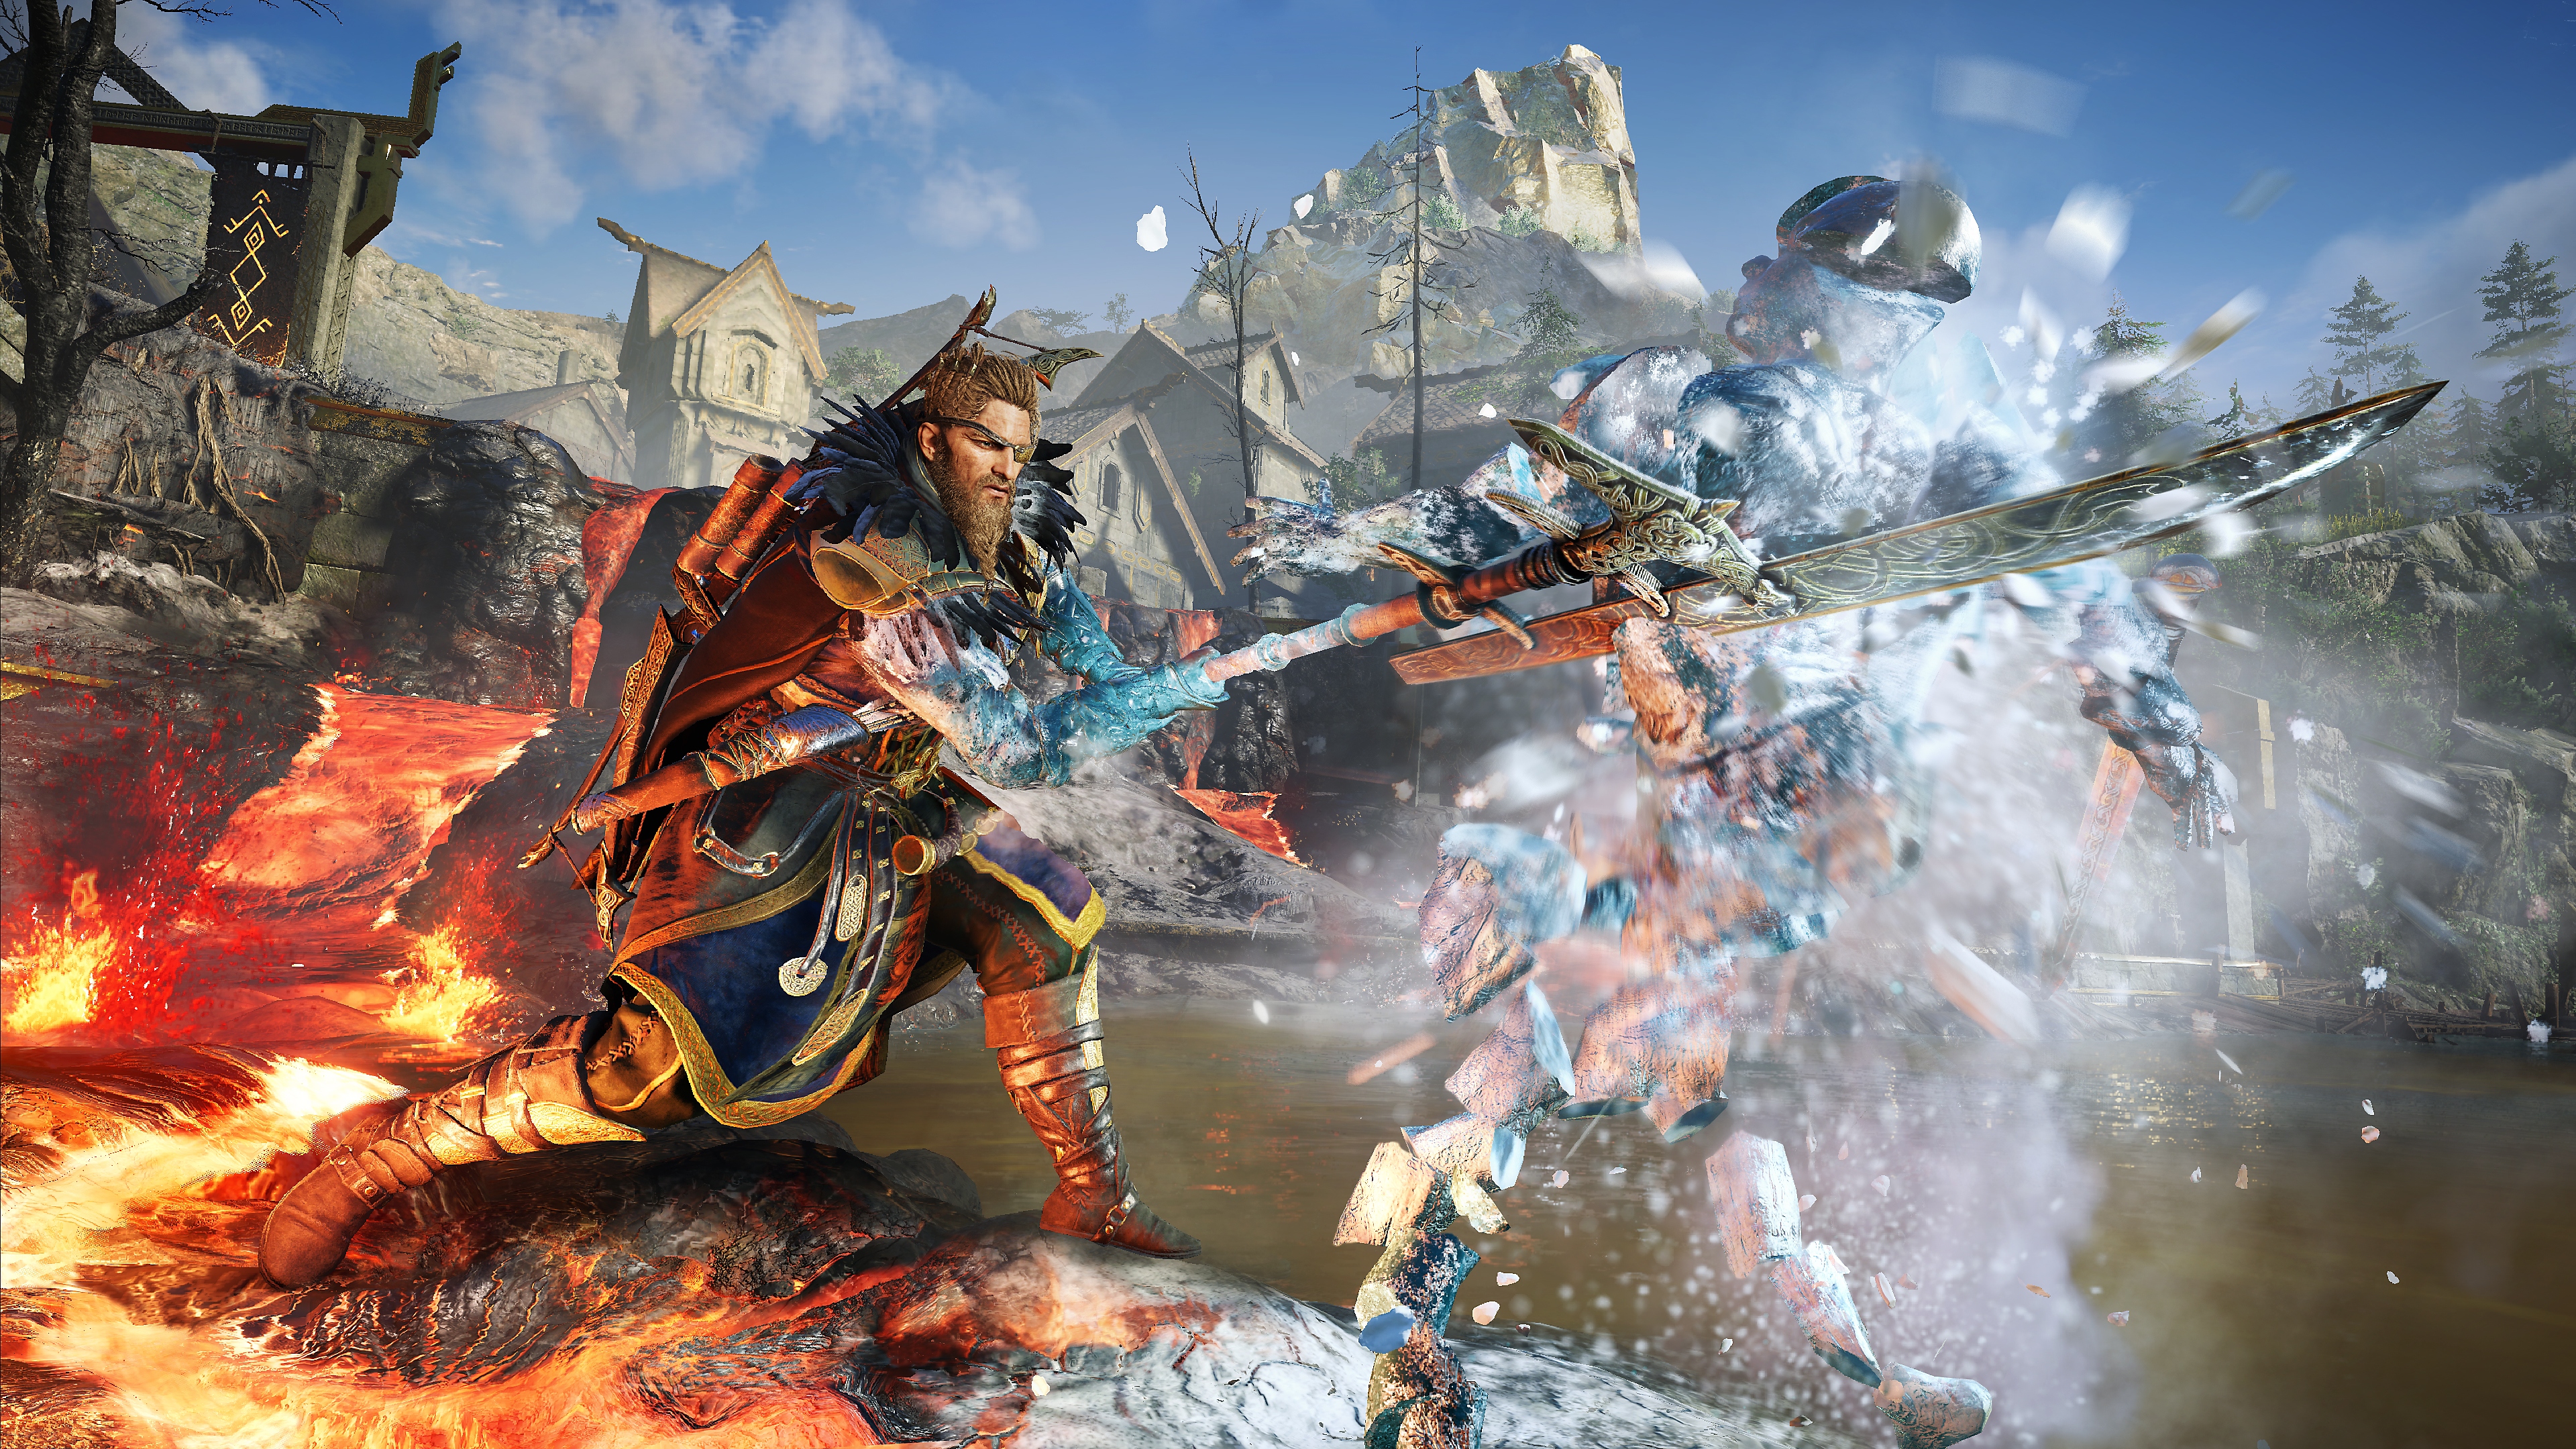 Captura de pantalla de Assassin's Creed Valhalla Dawn of Ragnarok que muestra al personaje principal haciendo pedazos a un enemigo de hielo con una lanza